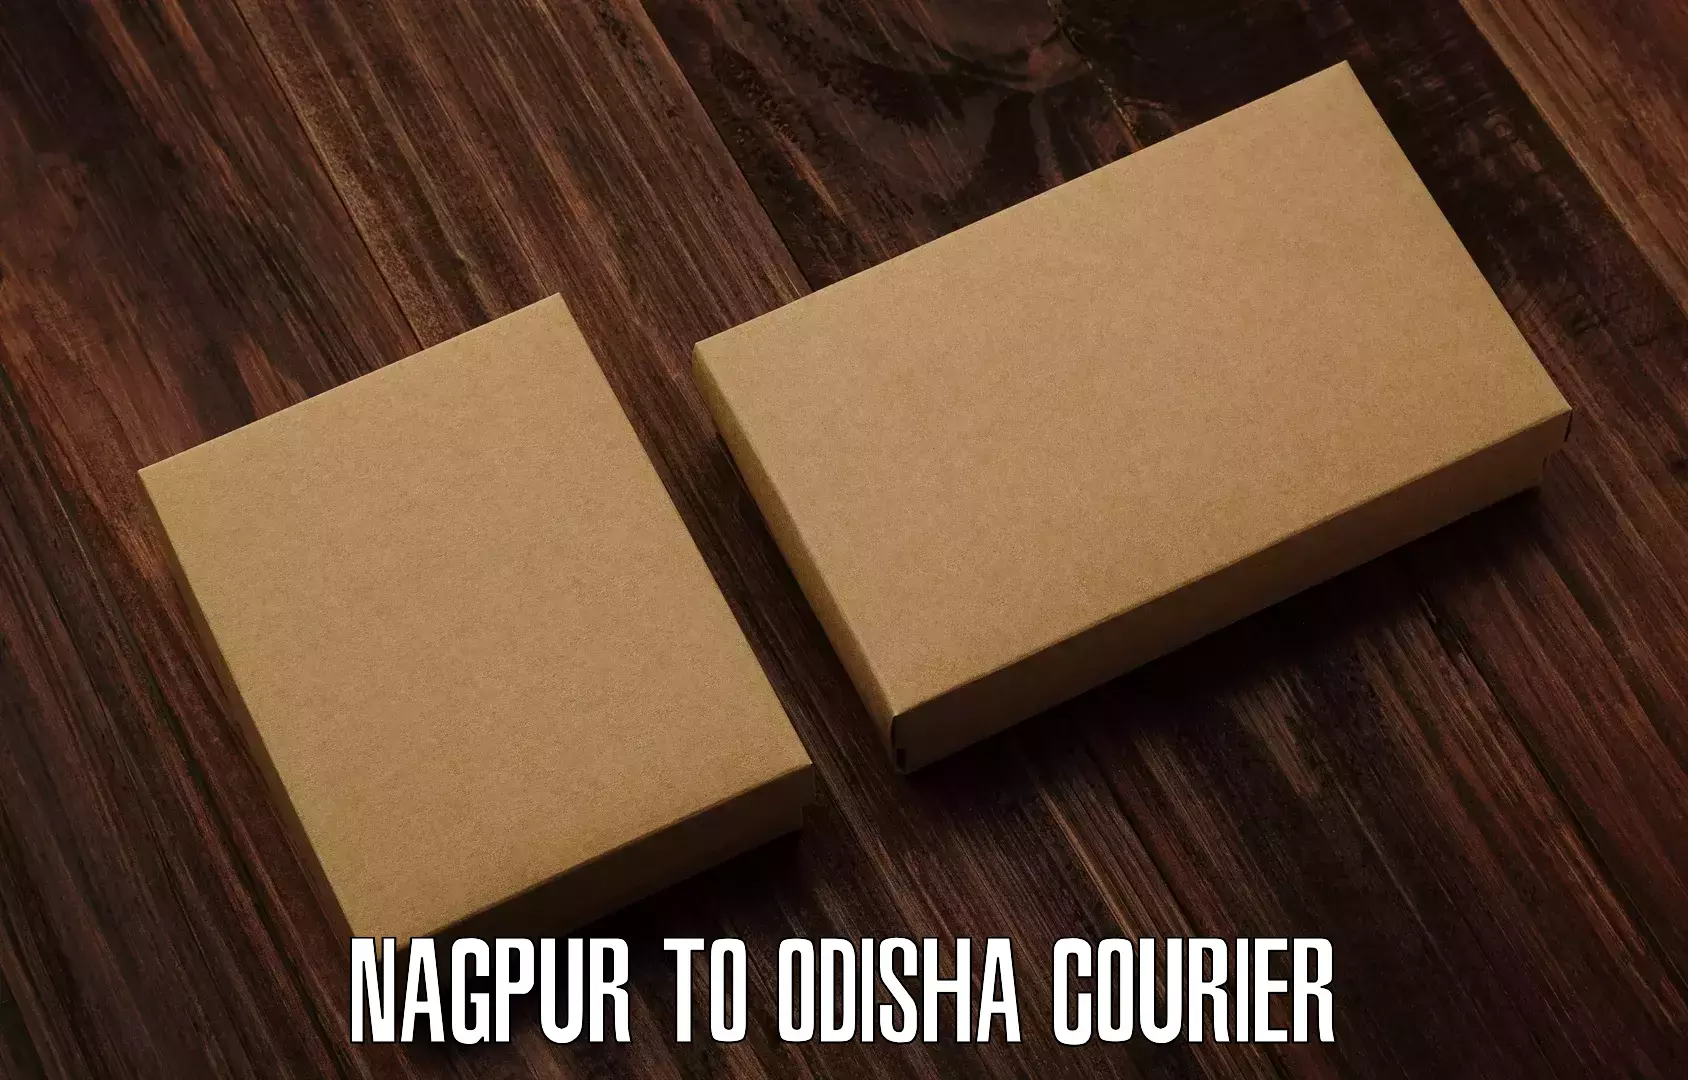 Easy access courier services Nagpur to Rayagada